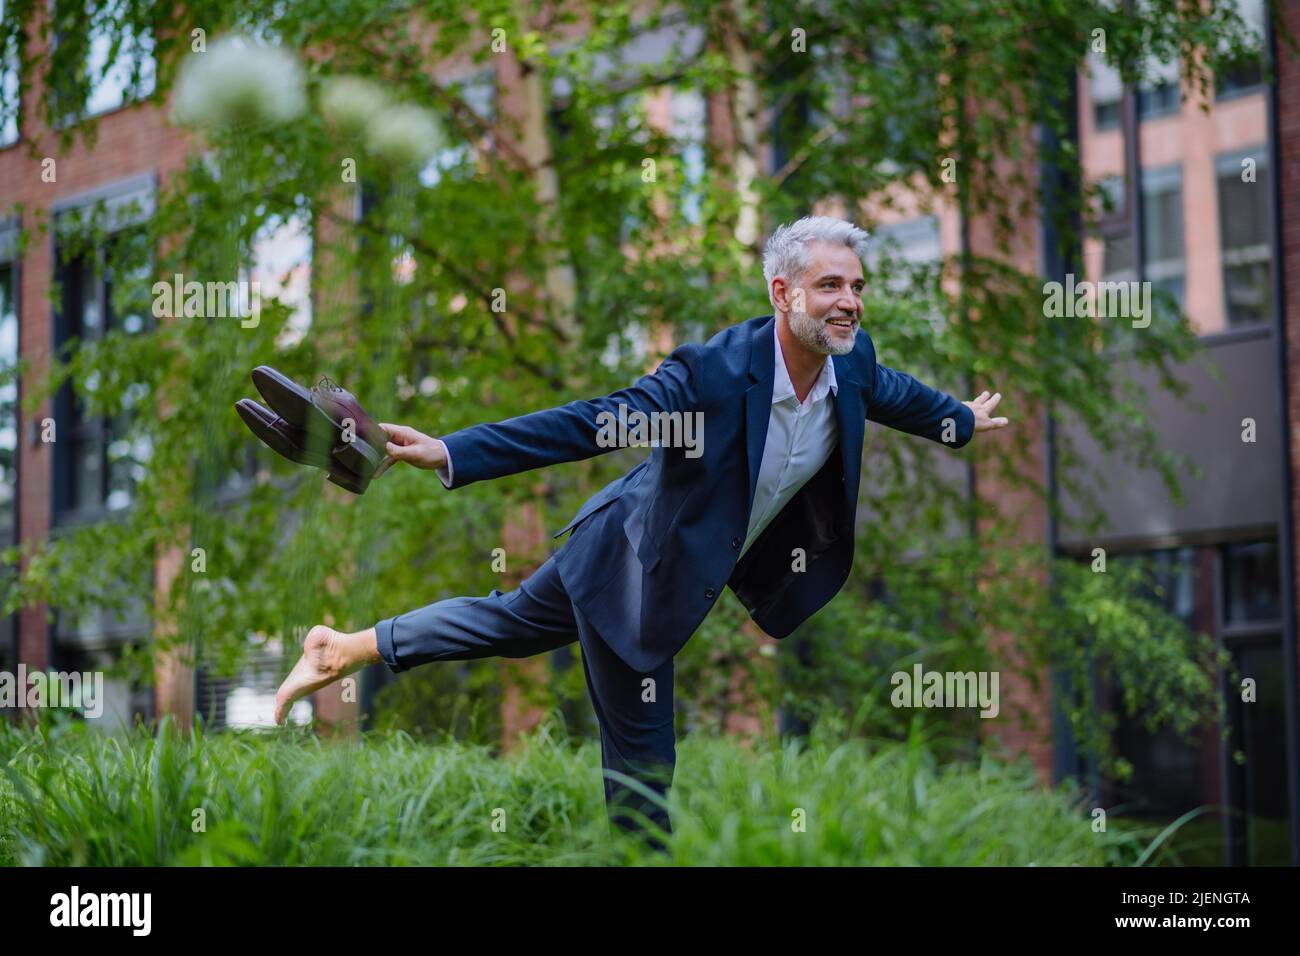 Ritratto divertente di uomo d'affari maturo e energico felice che porta scarpe e camminare a piedi nudi e fare posa in parco, sentirsi liberi, lavoro equilibrio della vita Foto Stock